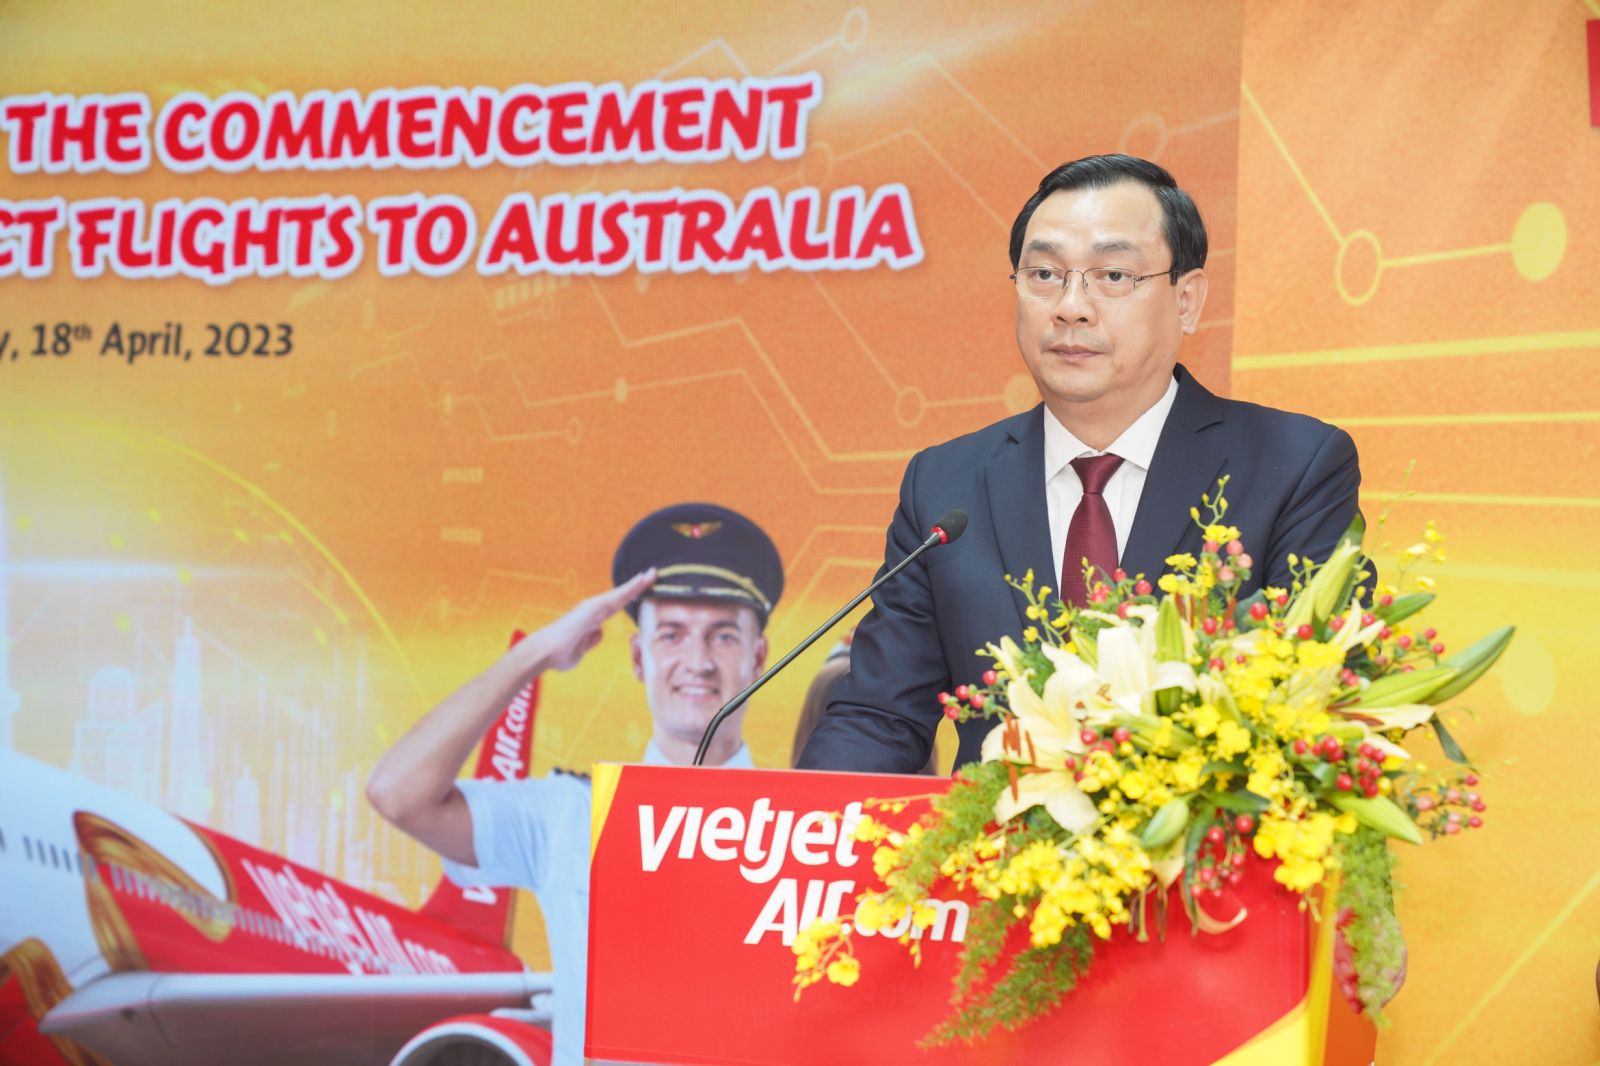 Kinh tế - Bộ trưởng Thương mại và Du lịch Úc chúc mừng các đường bay thẳng Việt Nam – Úc của Vietjet (Hình 8).